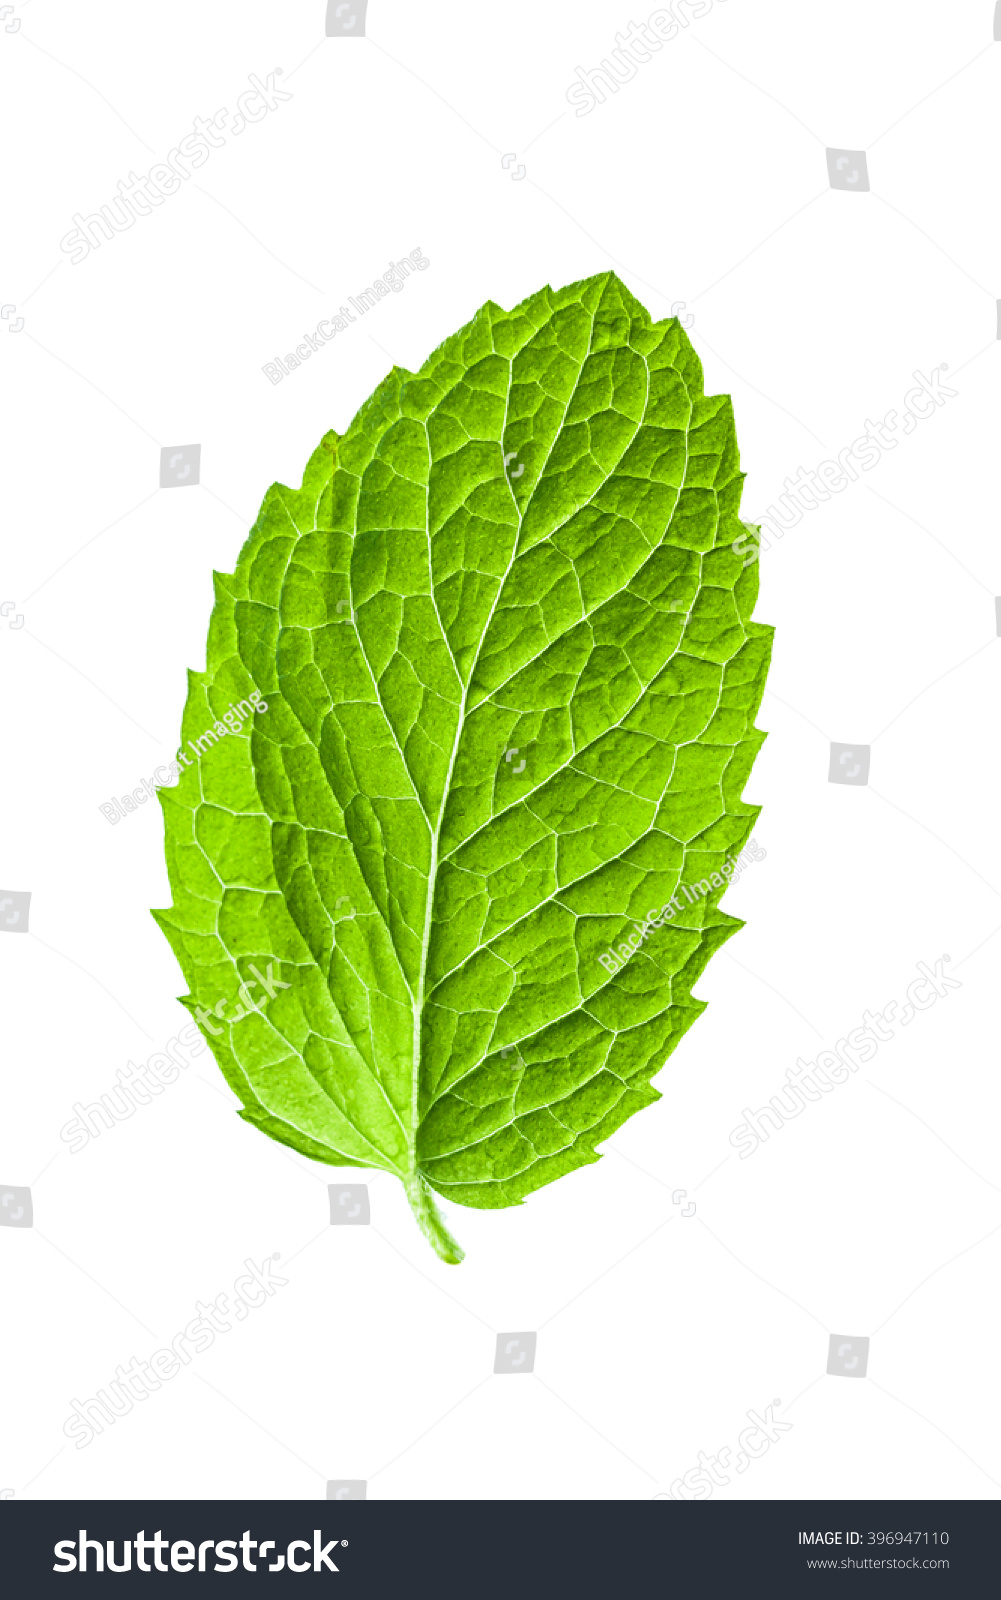 Single Mint Leaf Isolated On White Background Stock Photo 396947110